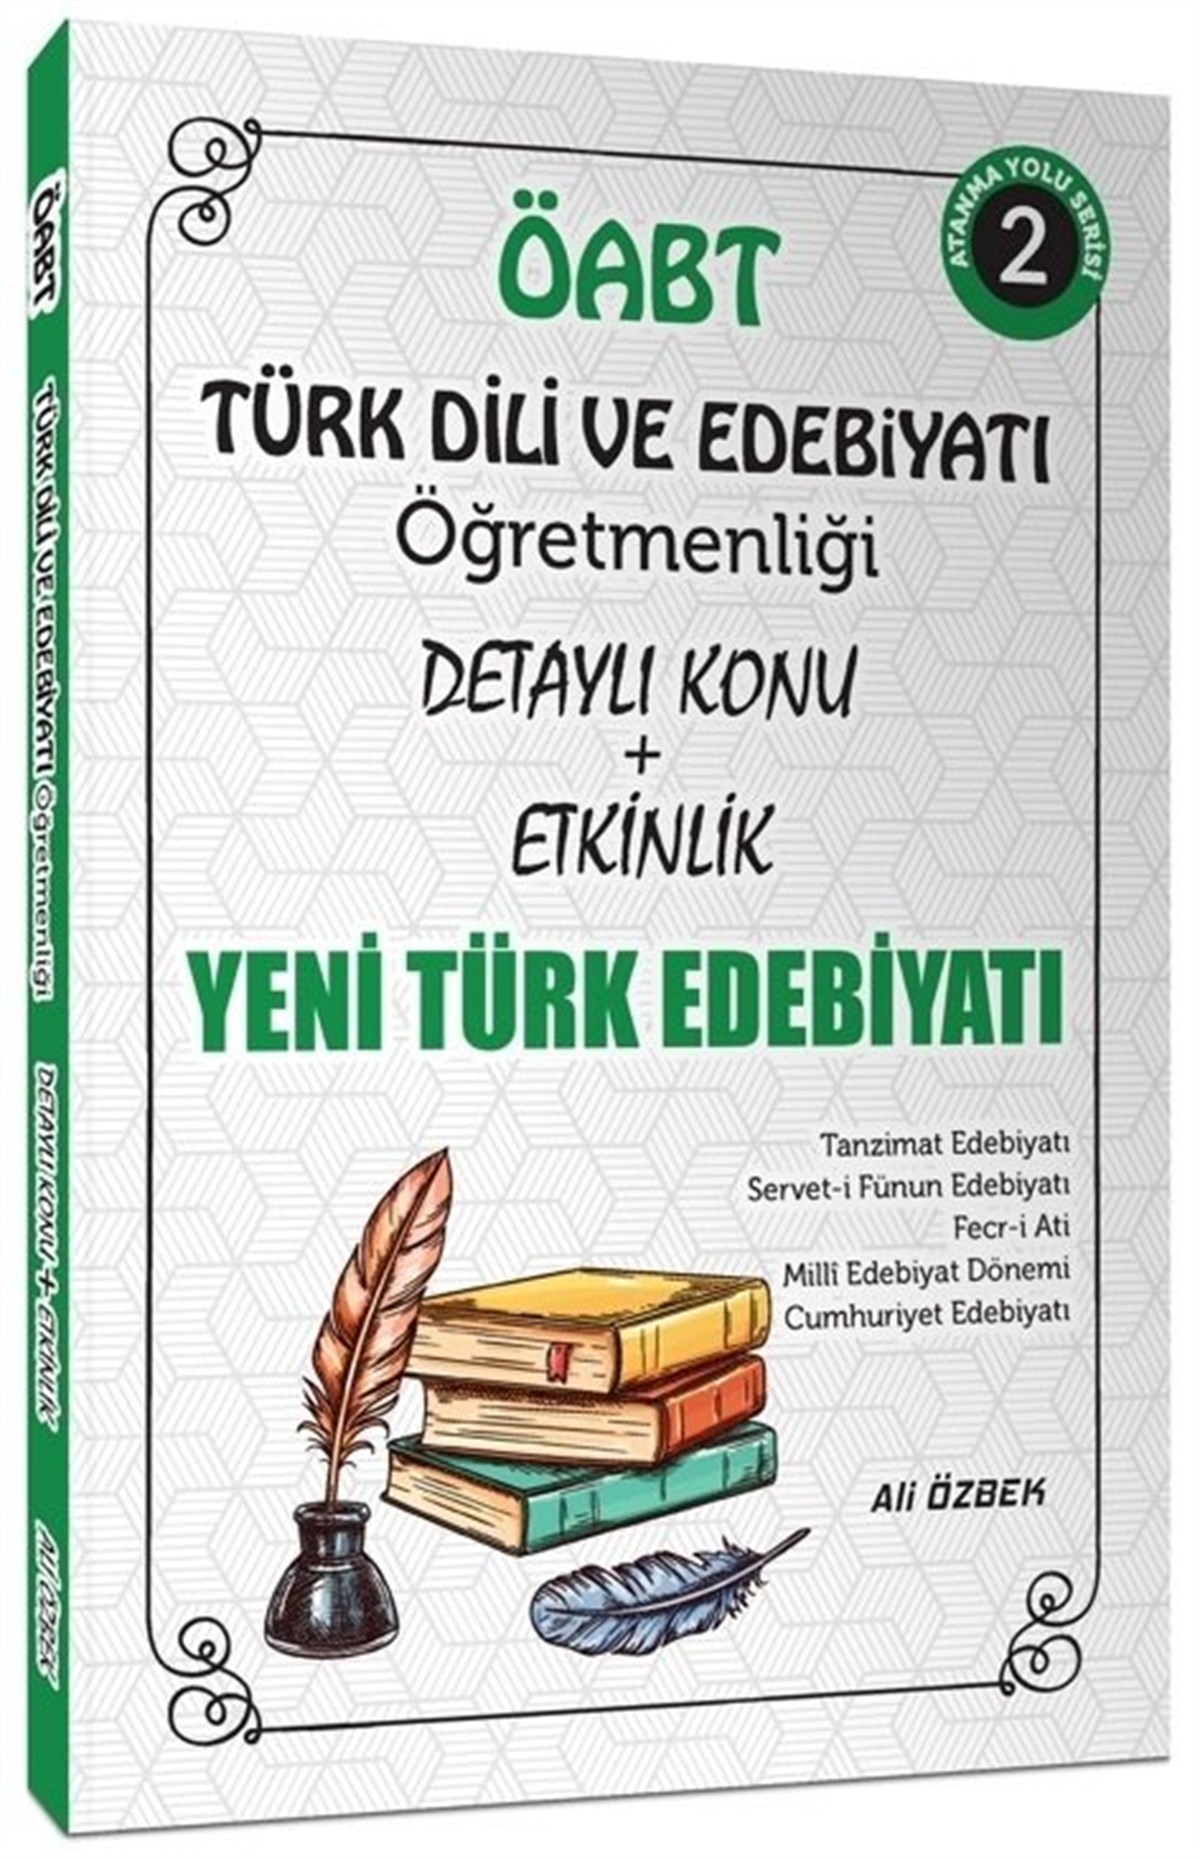 Ali Özbek 2021 ÖABT Türk Dili ve Edebiyatı Yeni Türk Edebiyatı Konu  Anlatımlı 2. Kitap Ali ÖzbekAli Özbek